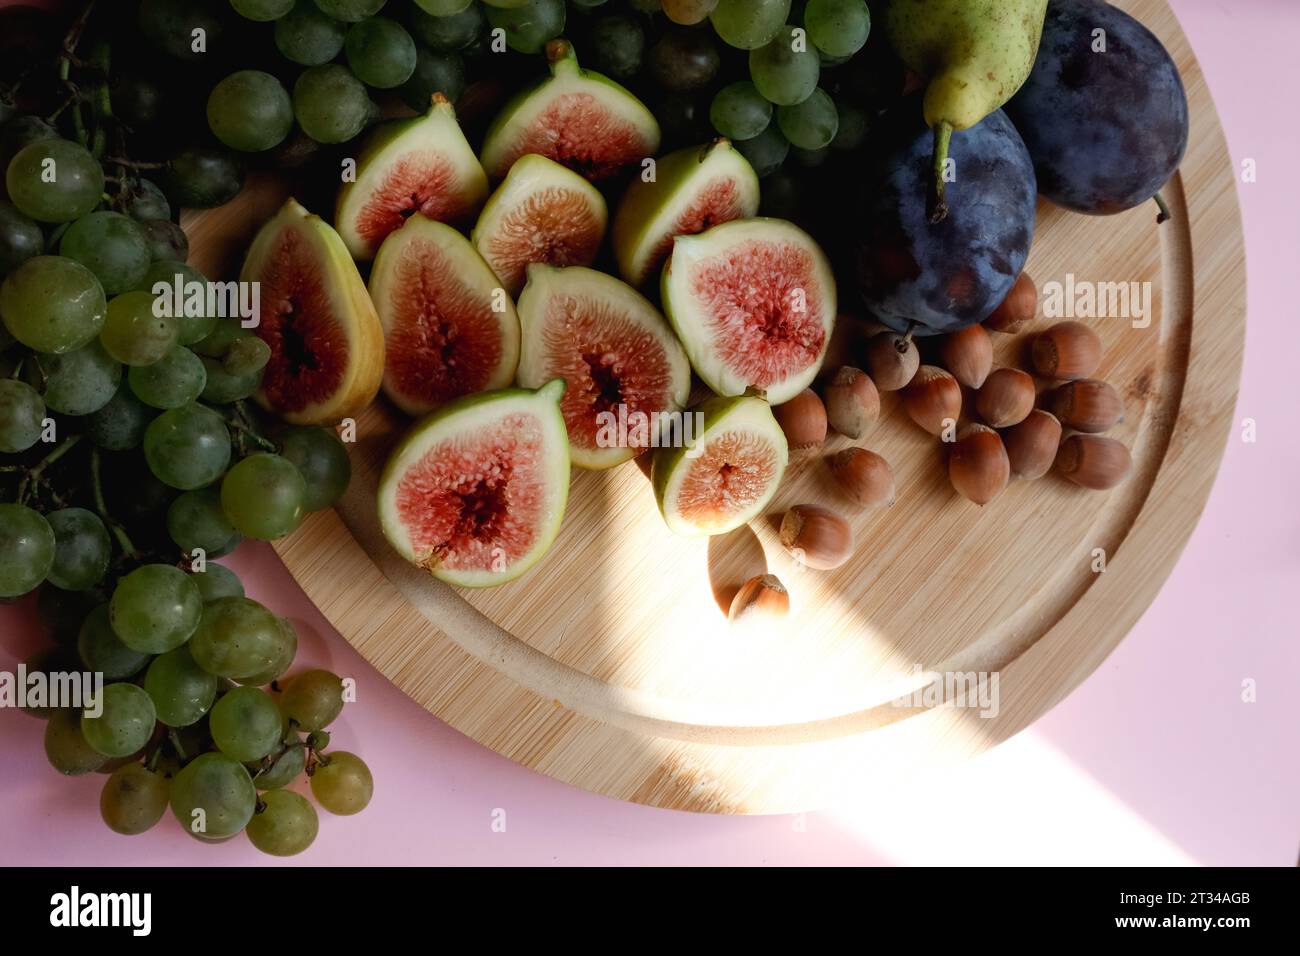 Vendemmia autunnale di frutta sulla tavola - fichi, uva, noci, prugne Foto Stock